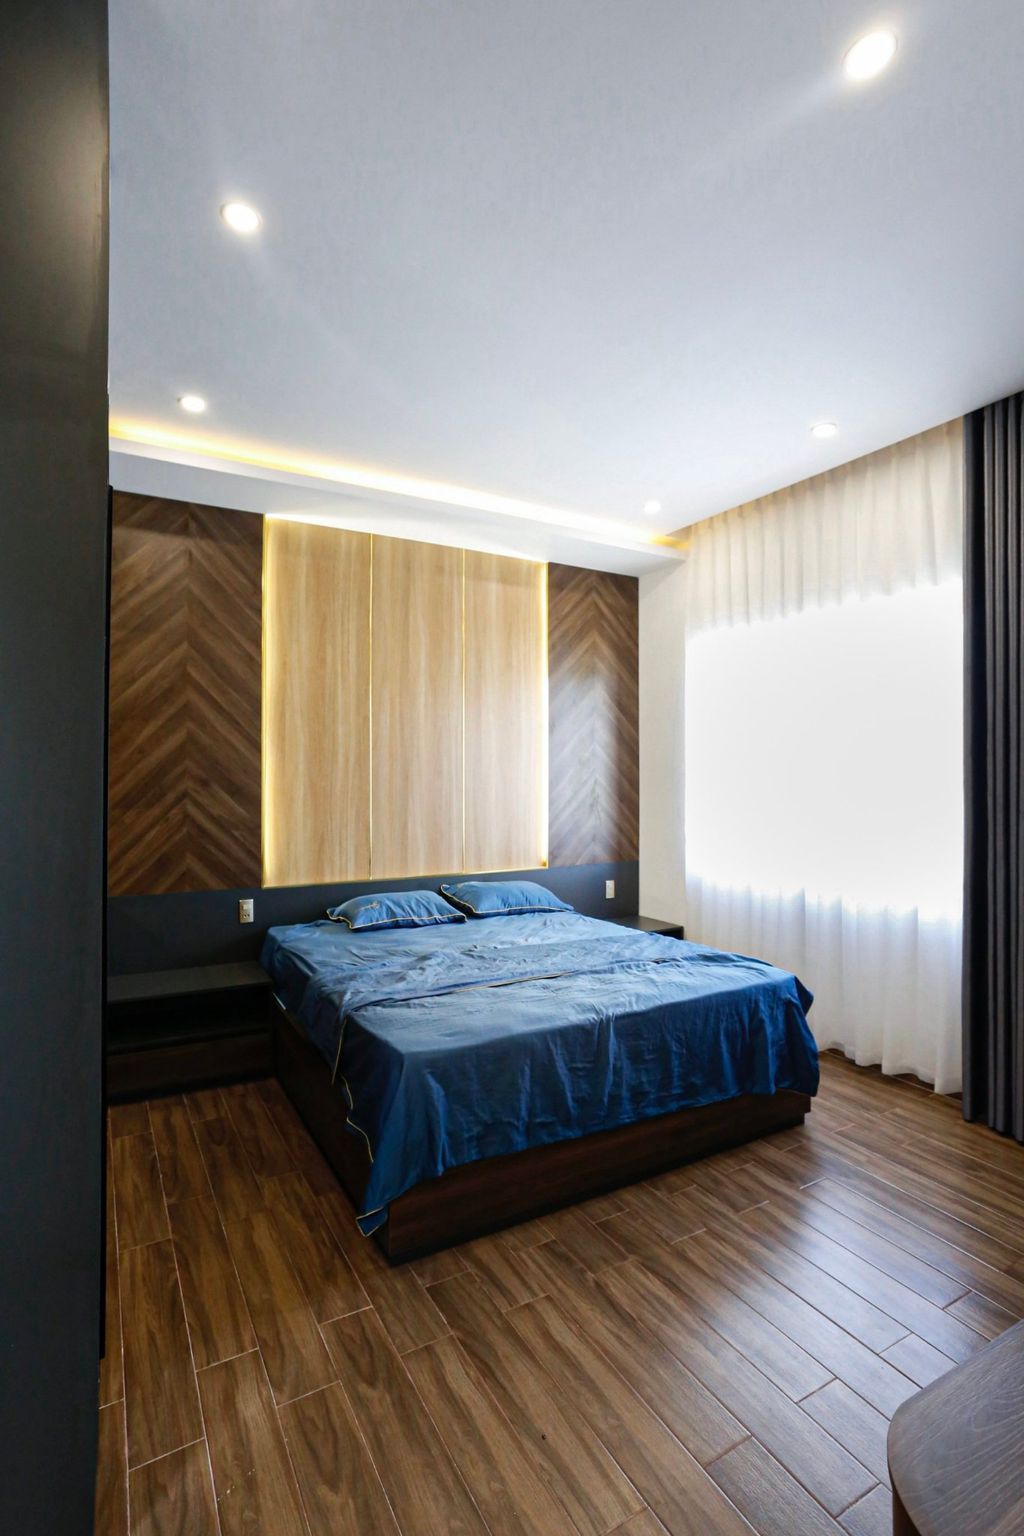 Phòng ngủ - Nhà phố 80m2 xây kiểu Hiện đại, tối ưu không gian với tông màu xám - đen sang trọng  | Space T